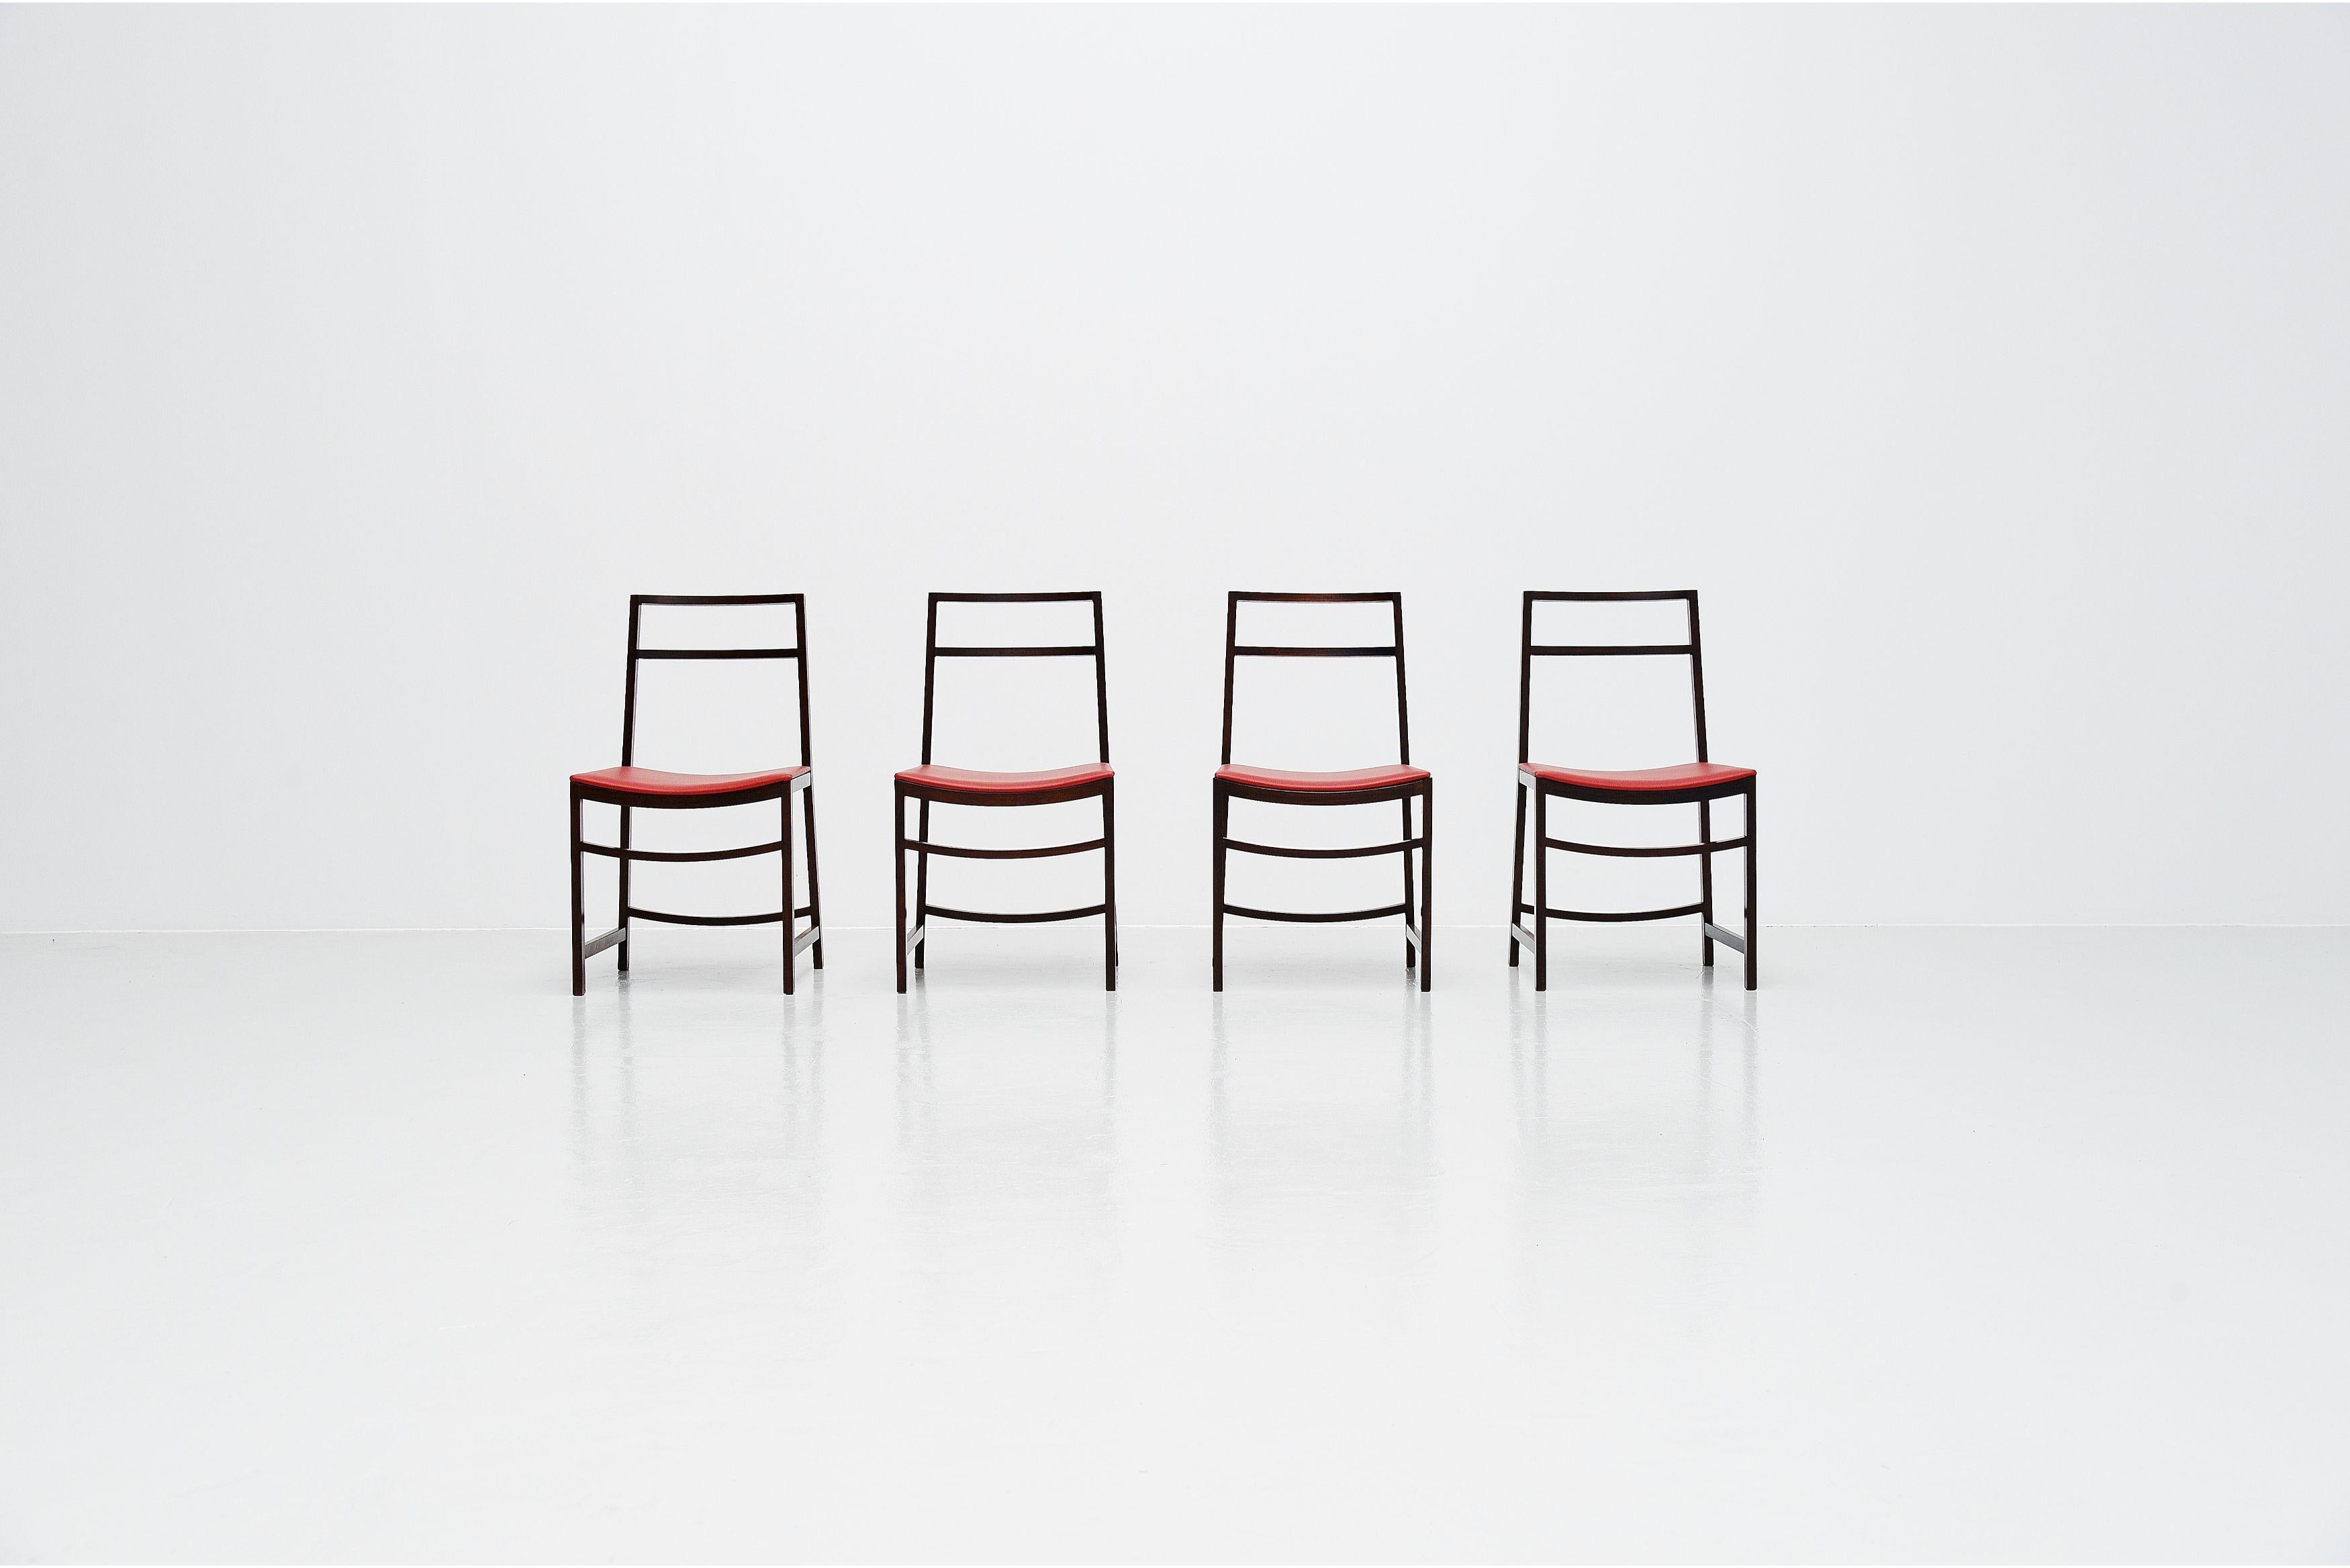 Très belles chaises de salle à manger minimalistes conçues par Renato Venturi et fabriquées par MIM (Mobili Italiani Moderni) Roma, Italie, 1961. Les chaises ont des cadres en bois de rose massif et sont nouvellement tapissées de cuir rouge. Les